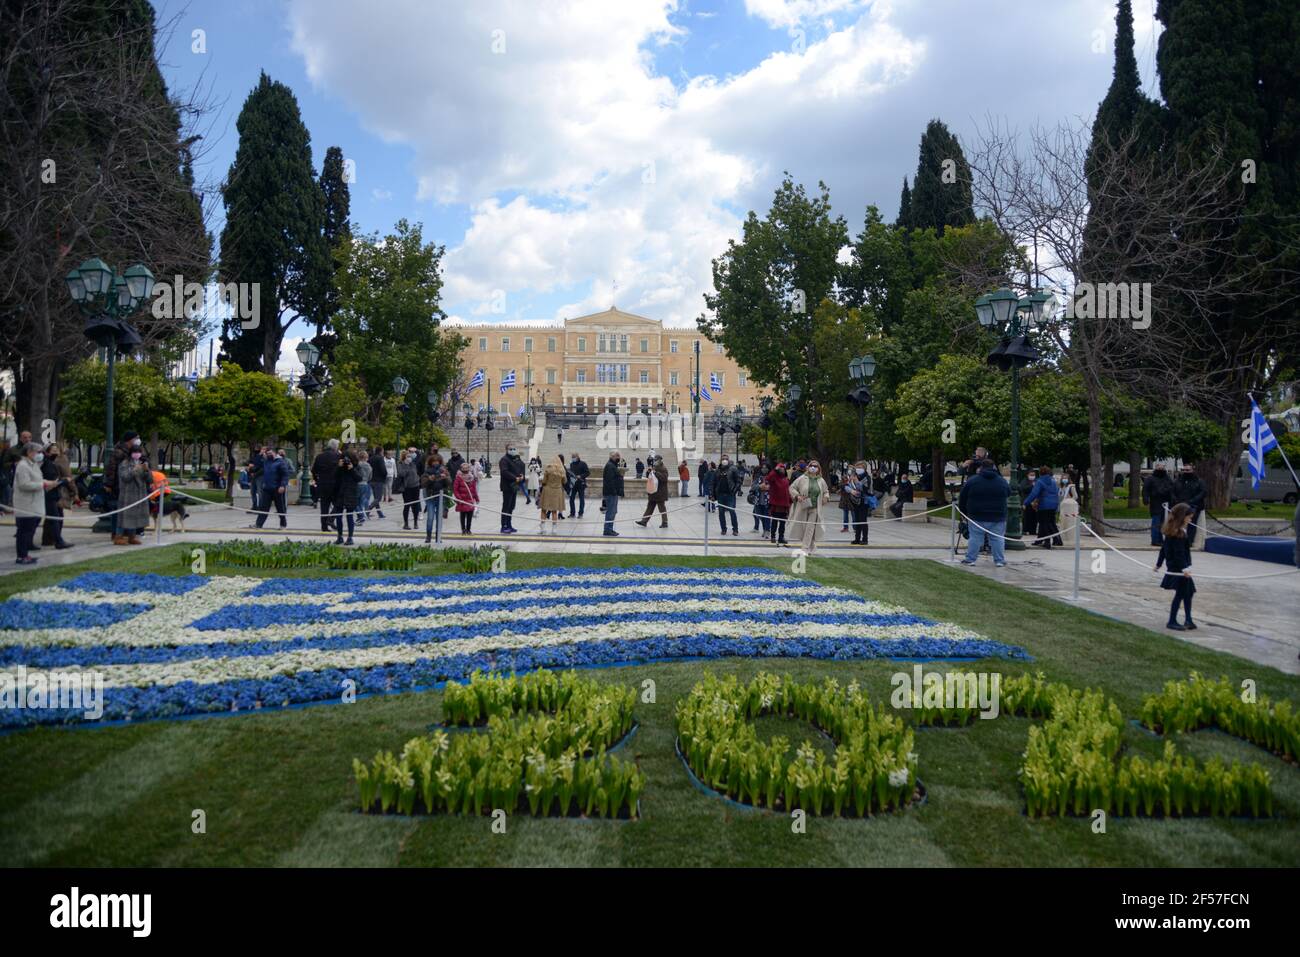 Drapeaux grecs placés sur la place Syntagma avant les célébrations du Bicentenaire de l'indépendance. Athènes, Grèce, 24 mars 2021. Crédit: Dimitris Aspiotis Banque D'Images